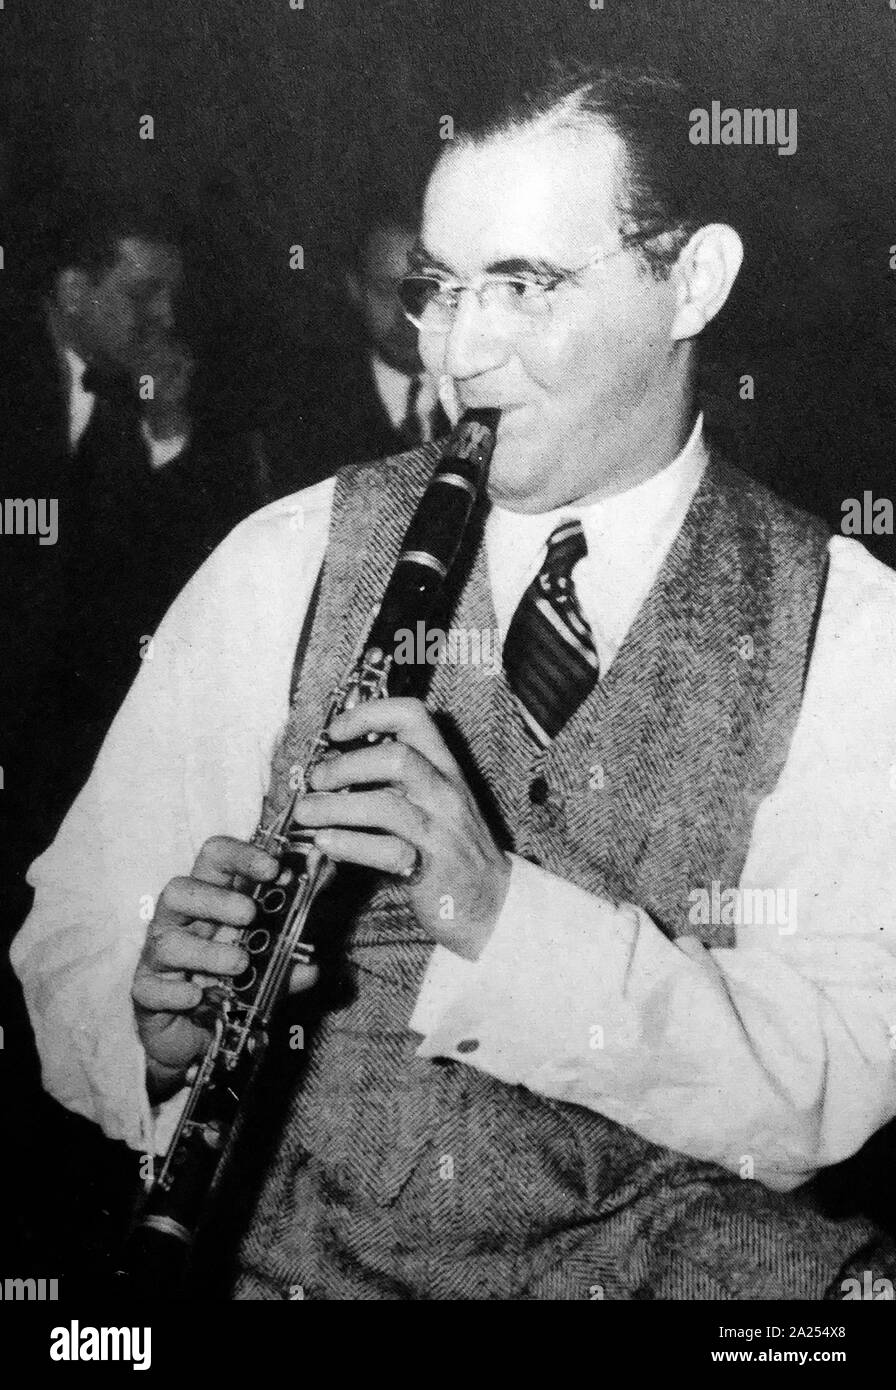 Glenn Miller (1904 - 1944), American big band musicista, arrangiatore, compositore e bandleader nello swing era. Egli è stato il best-seller di artista di registrazione dal 1939 al 1943, alla guida di una delle più note big bands Foto Stock